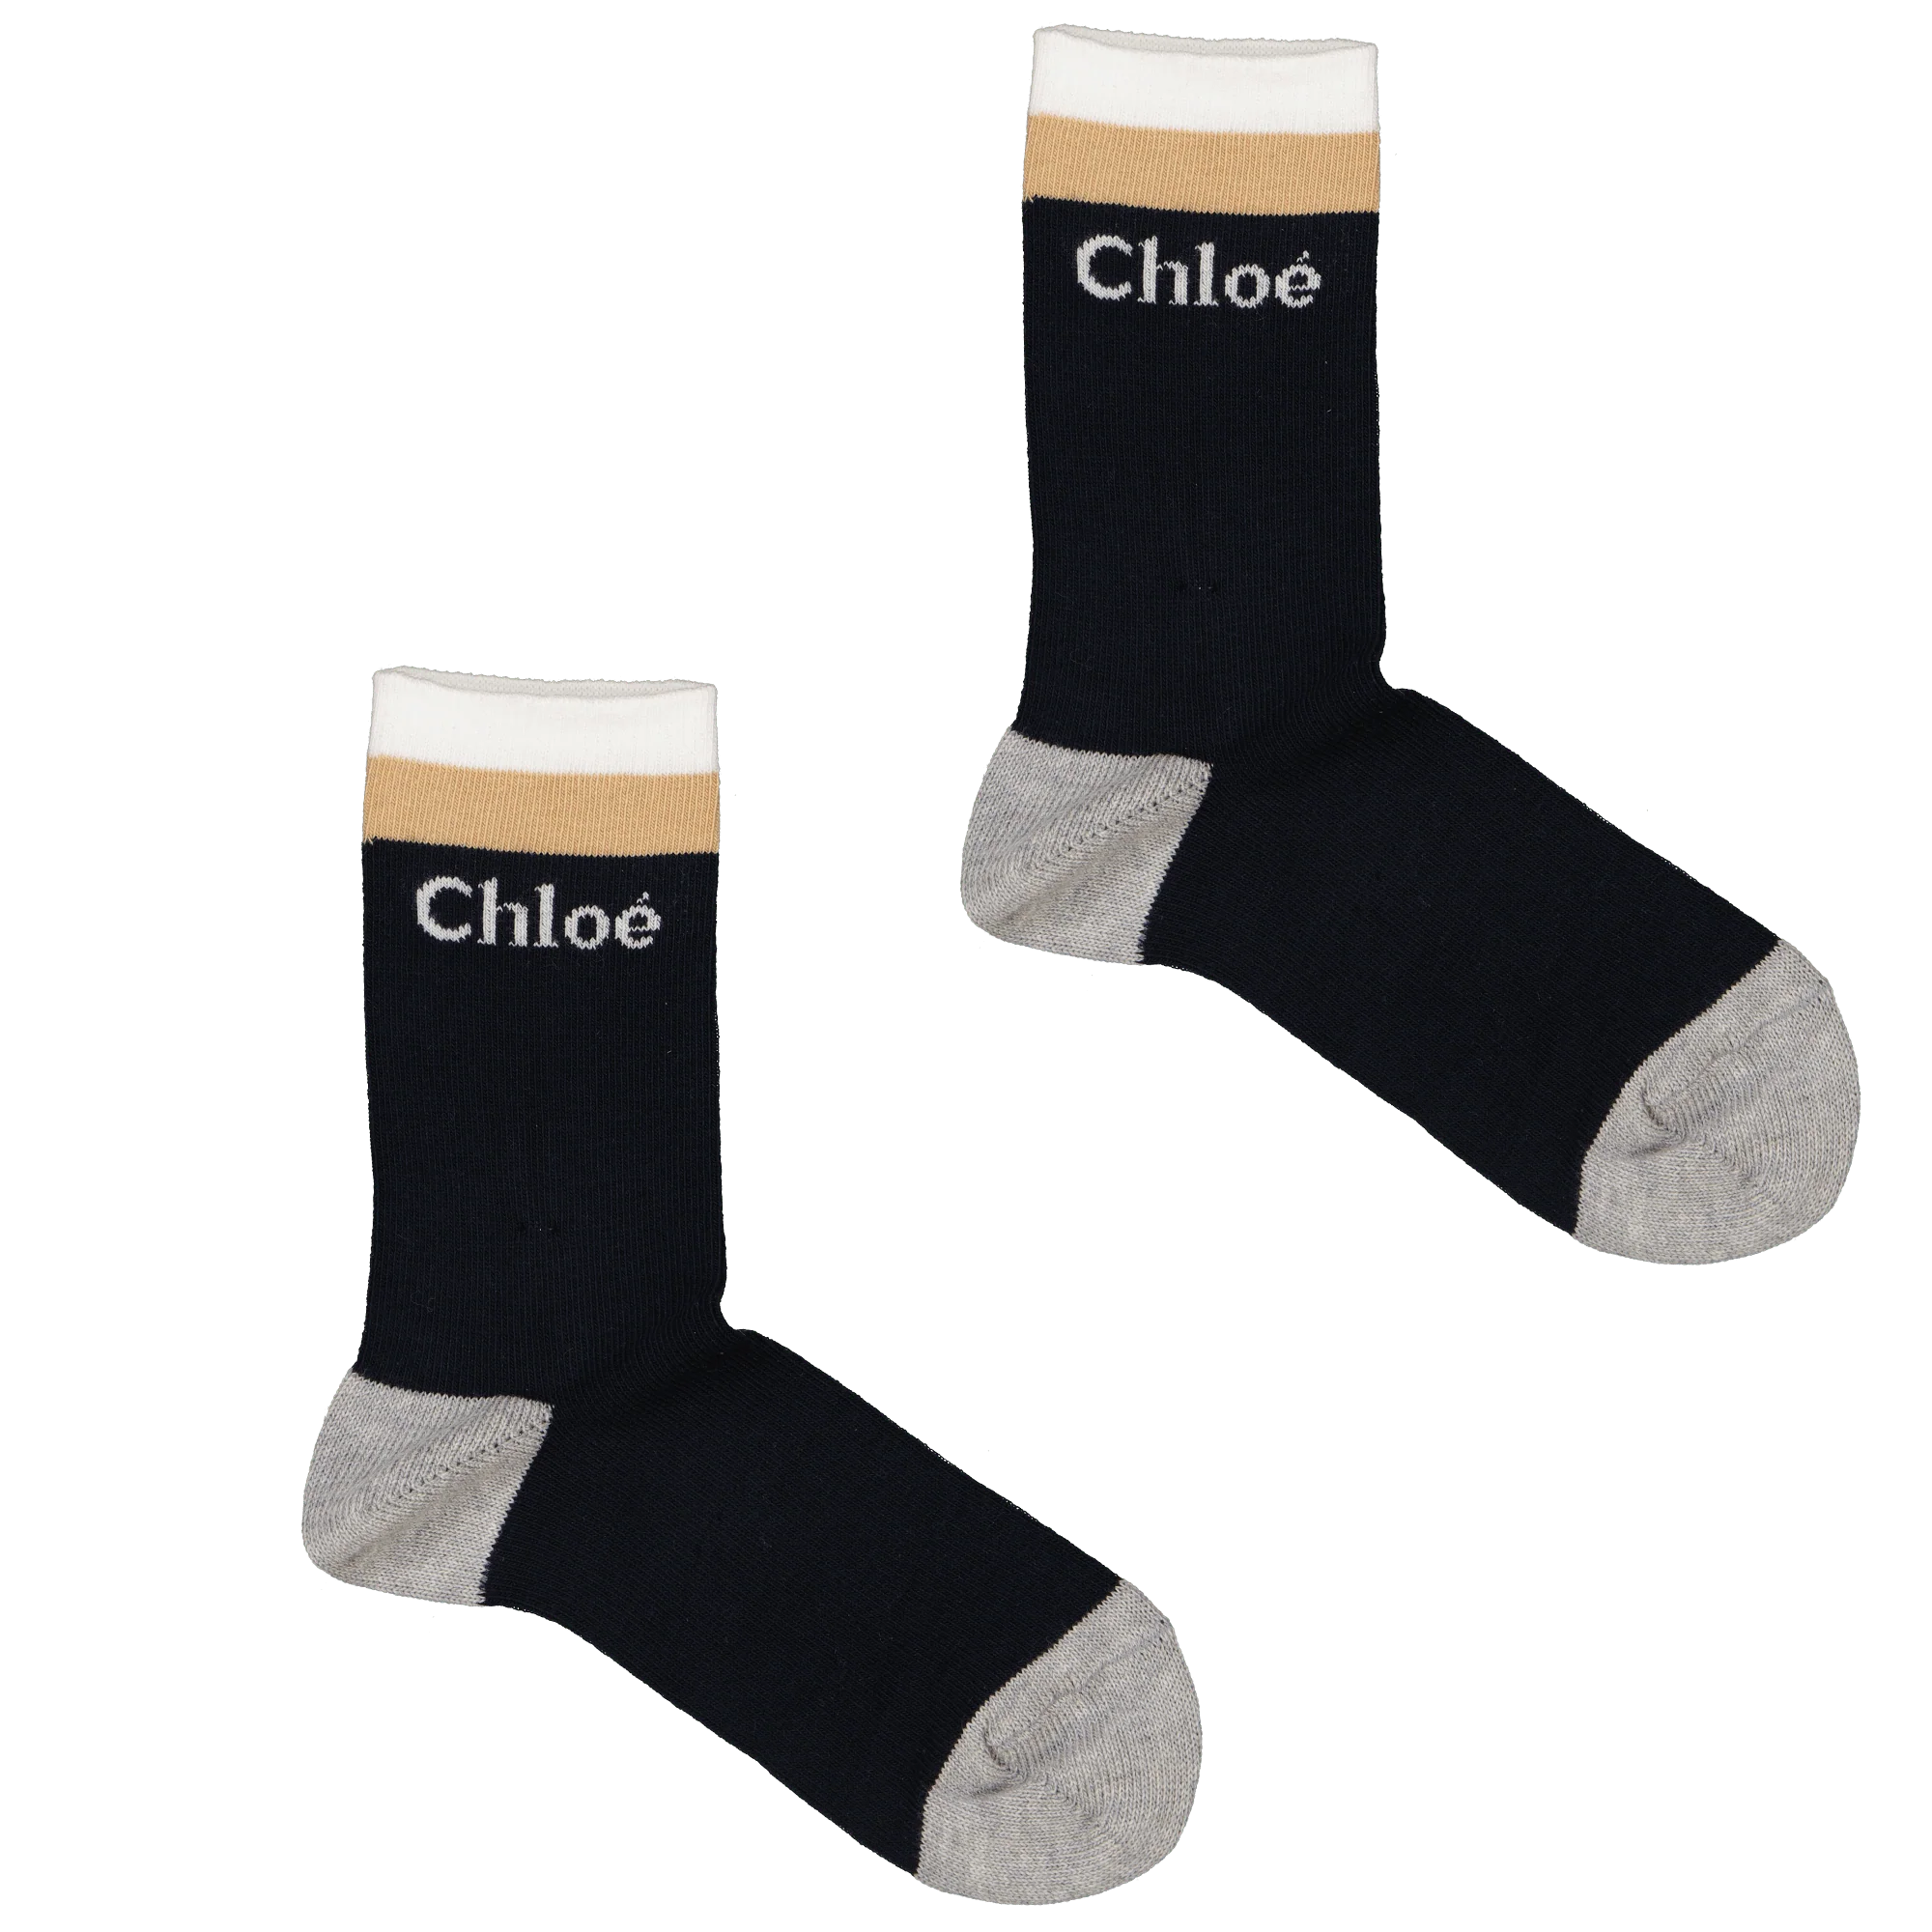 Chloe Kinder meisjes sokken